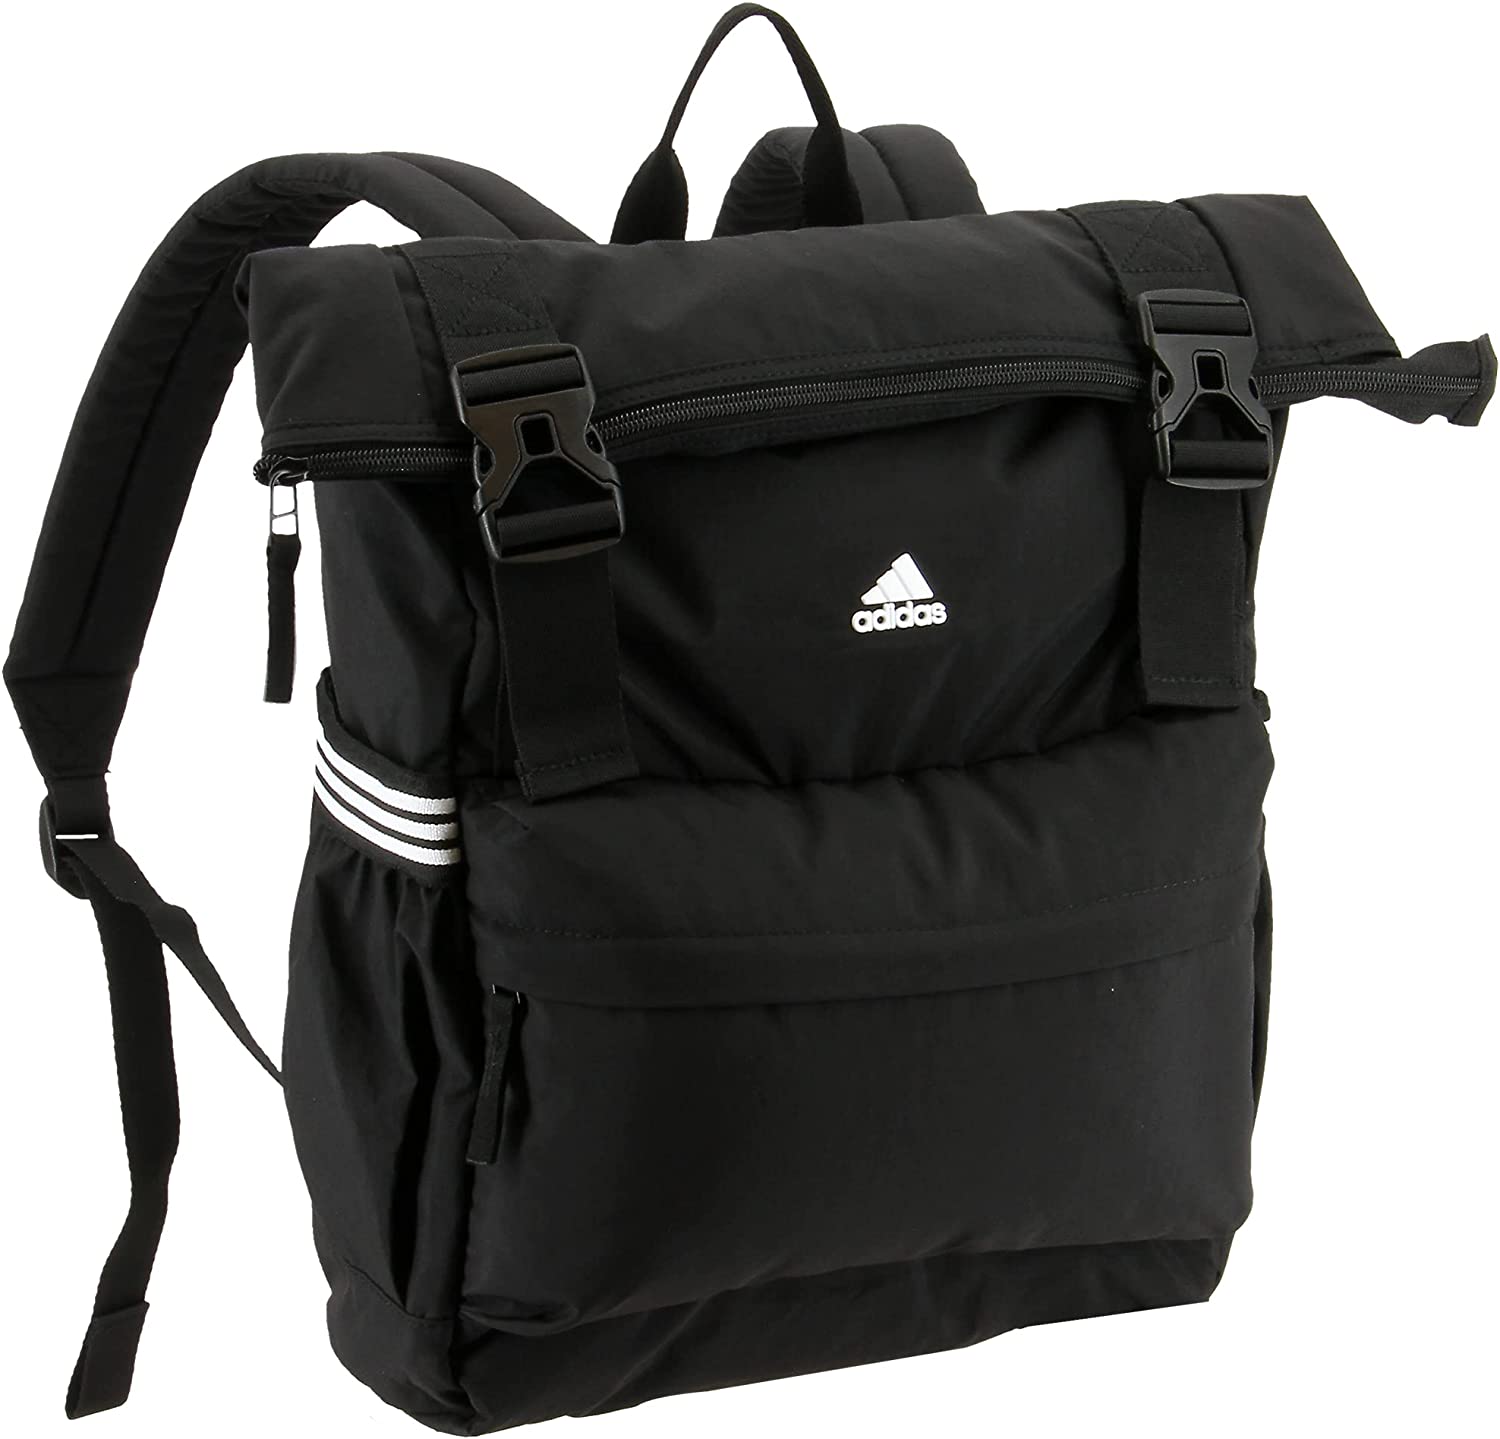 Adidas Yola III Backpack